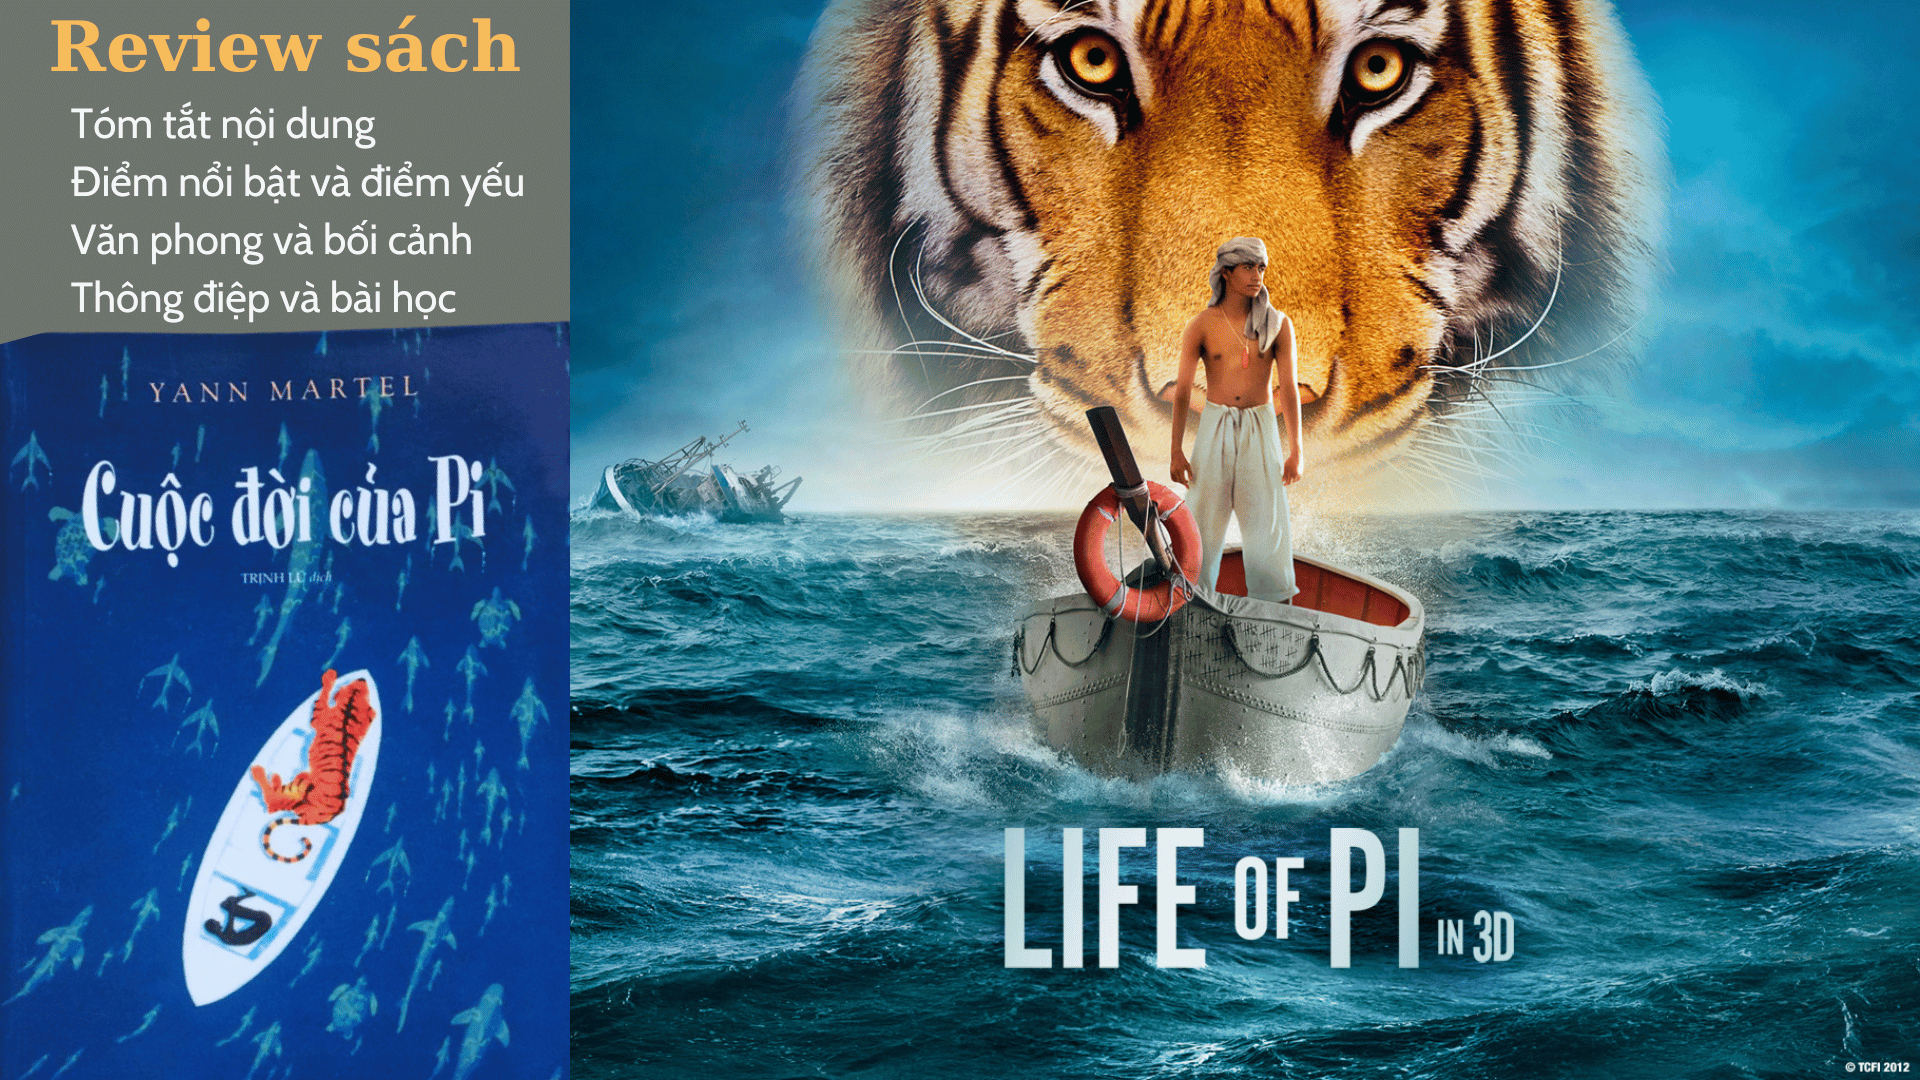 Review sách cuộc đời của Pi